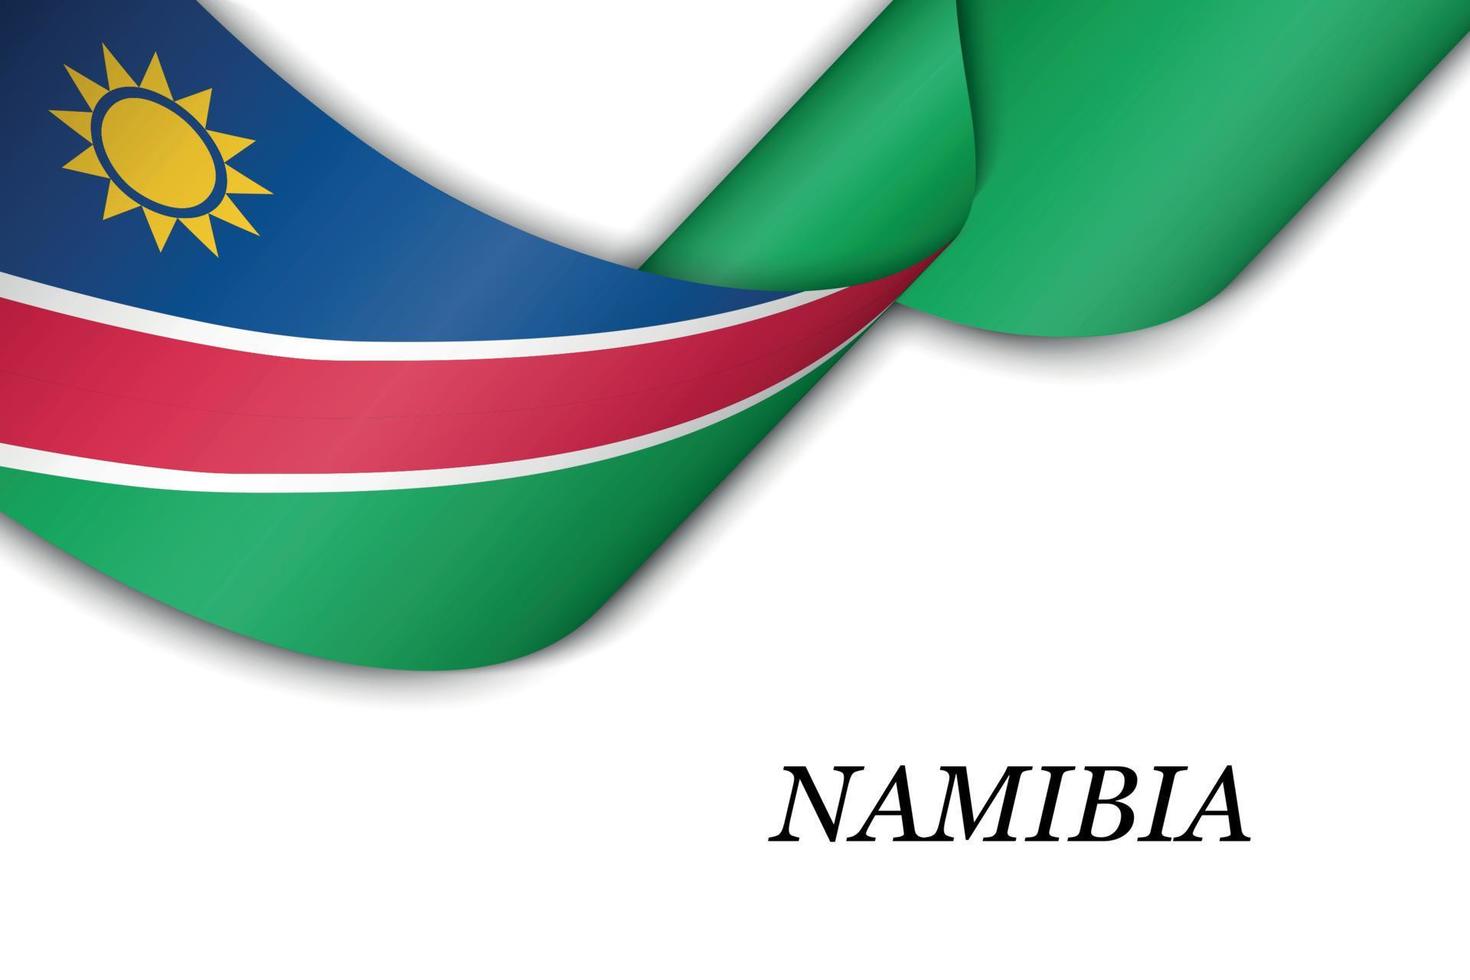 sventolando il nastro o lo striscione con la bandiera della namibia. vettore